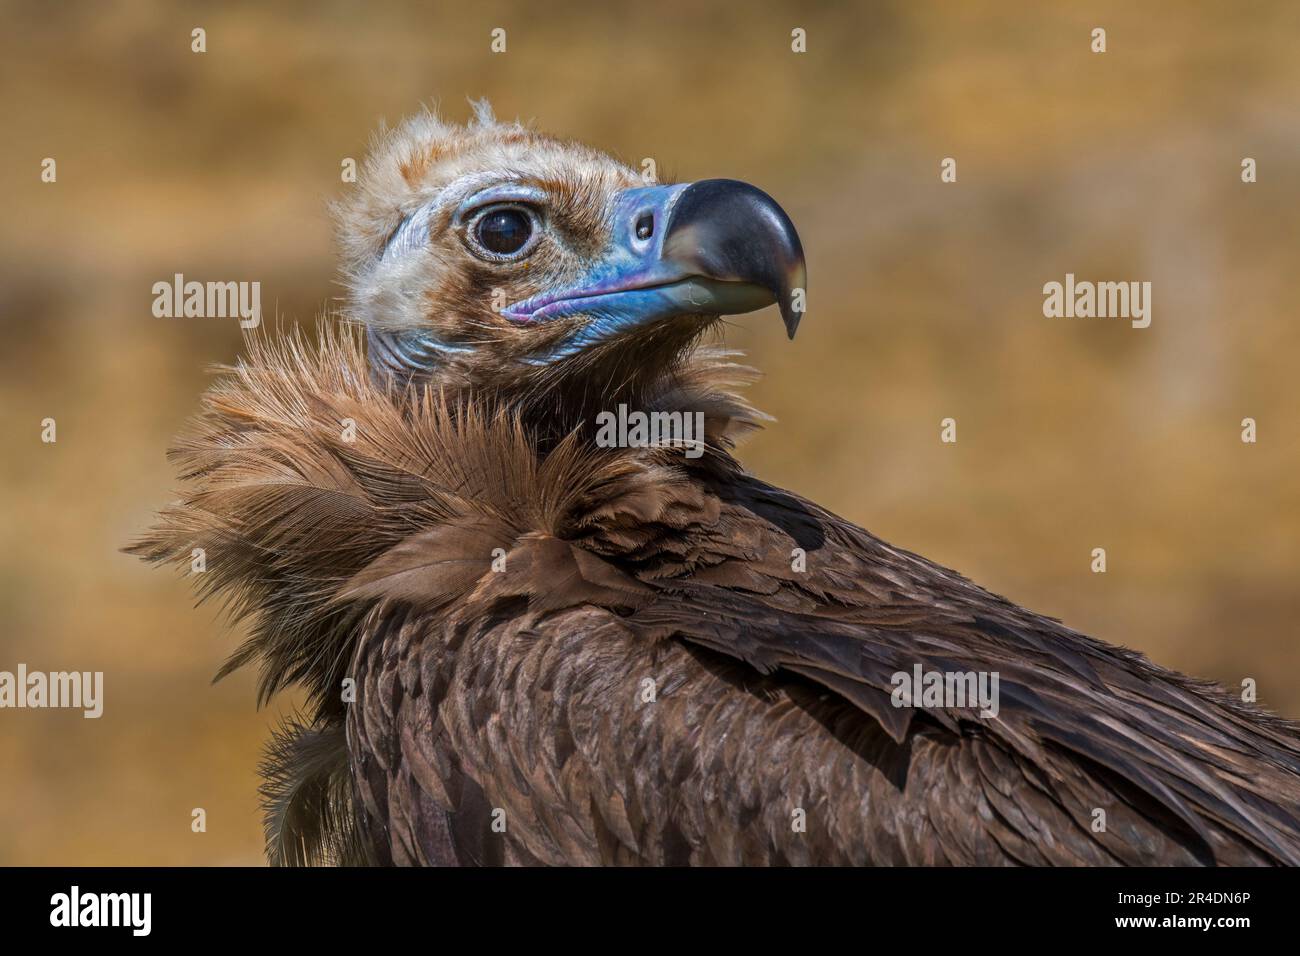 Cinereous vulture / monk vulture / Eurasian black vulture (Aegypius monachus), close-up portrait Stock Photo